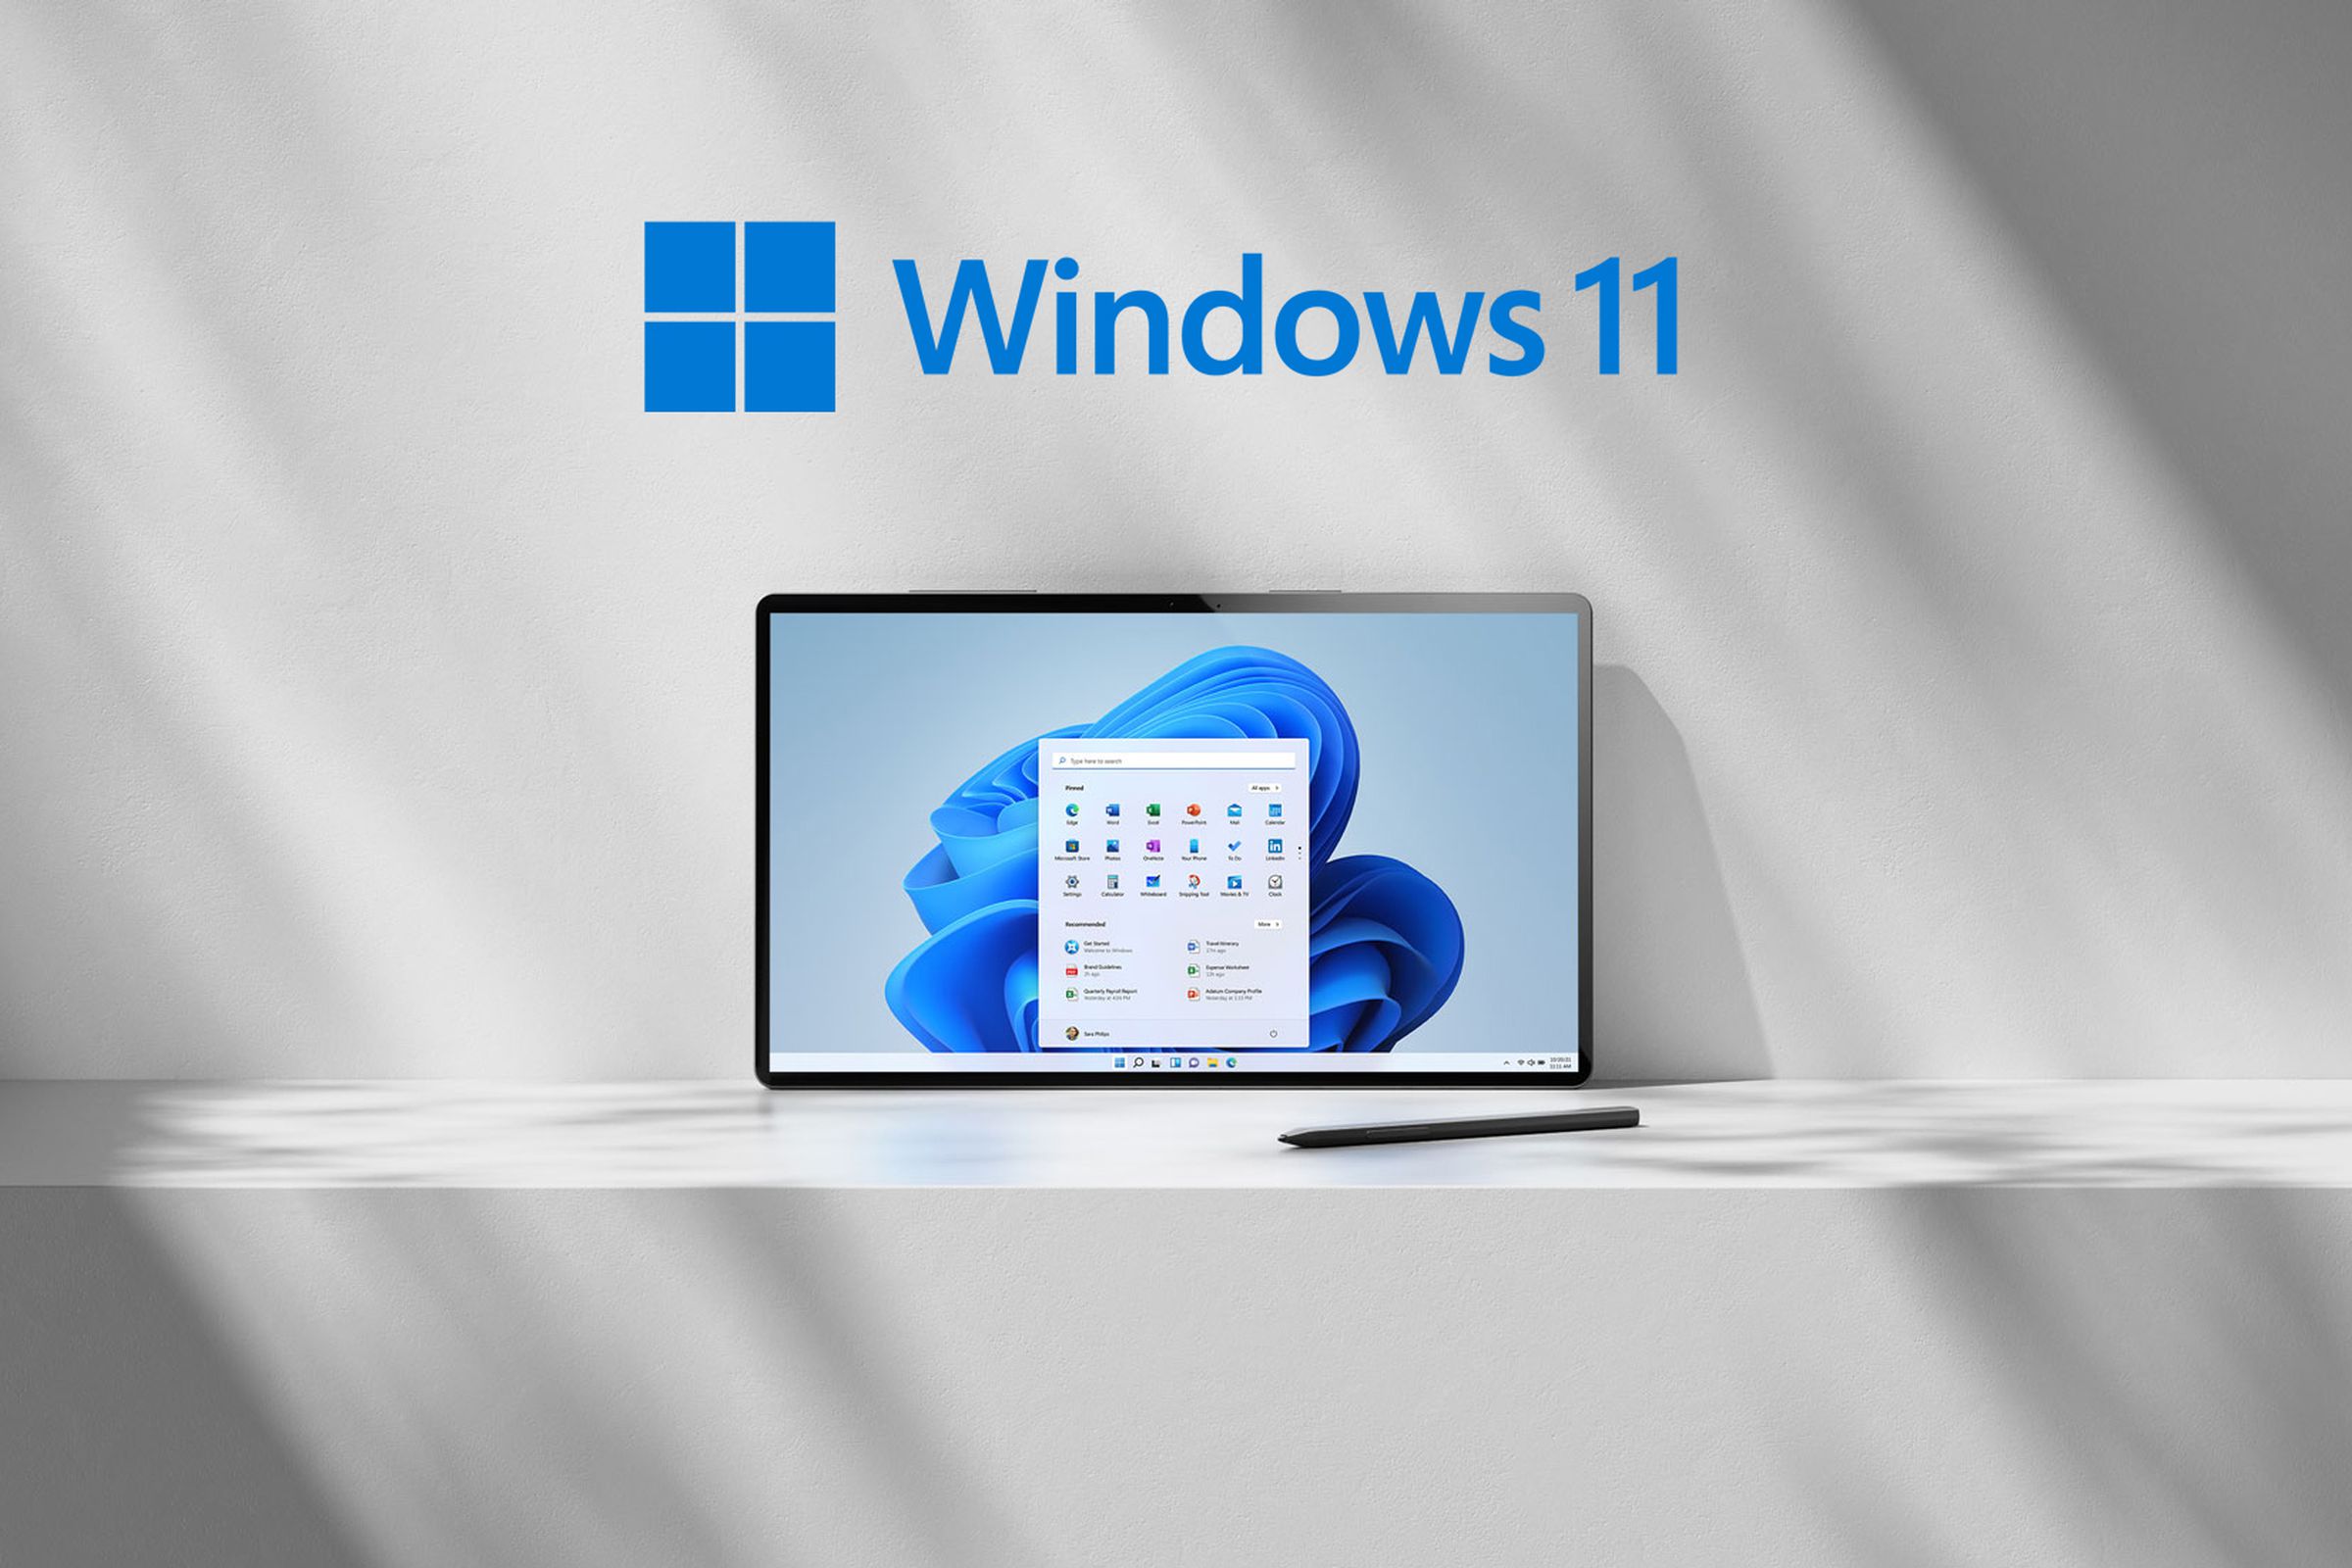 Illustration of Windows 11 running on a tablet